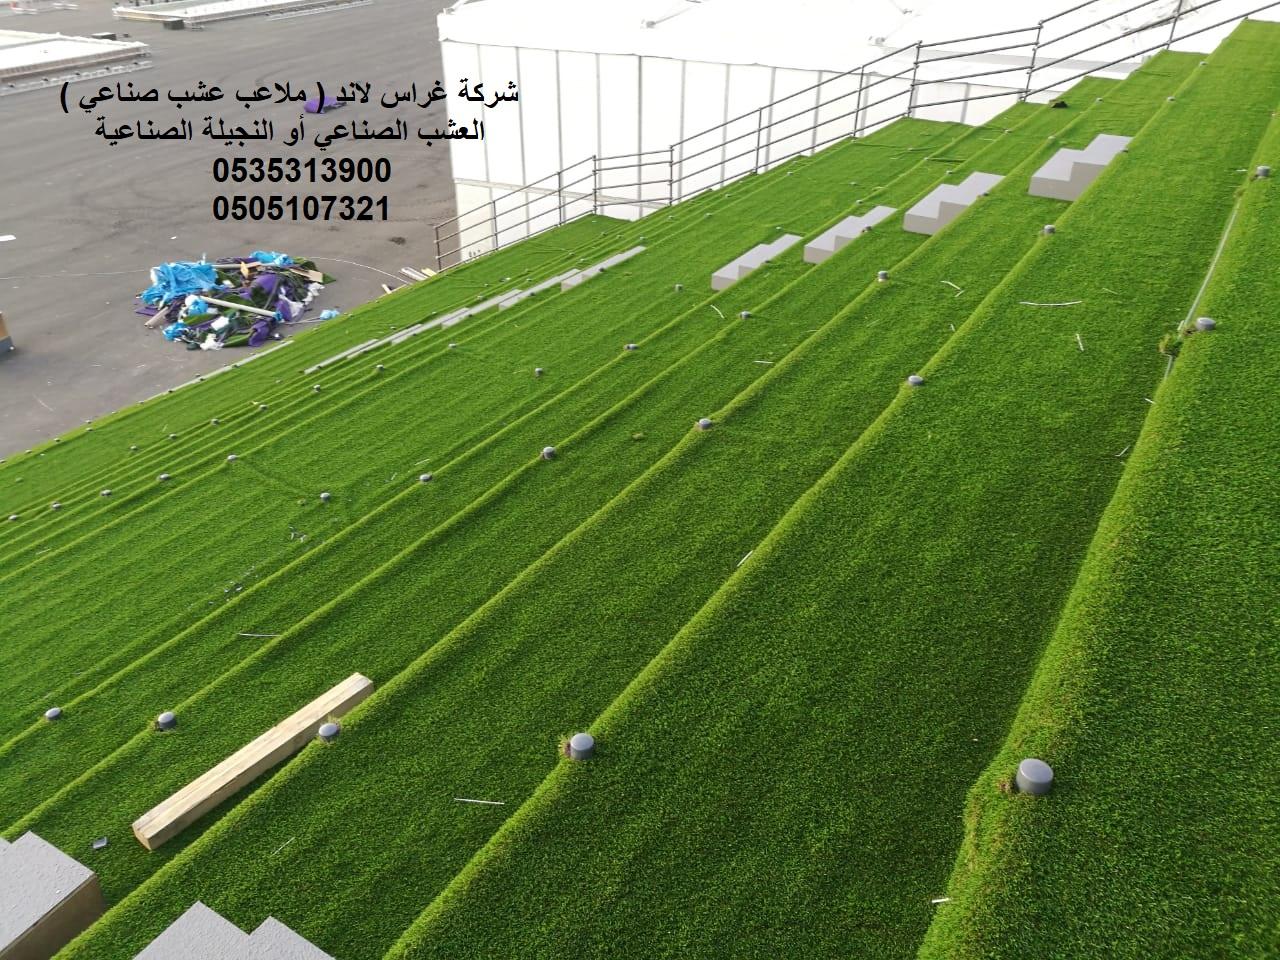 شركة غراس لاند (ملاعب عشب صناعي) عشب,صناعى,الحدائق,الملاعب,الارضيات,المطاطية 607443570